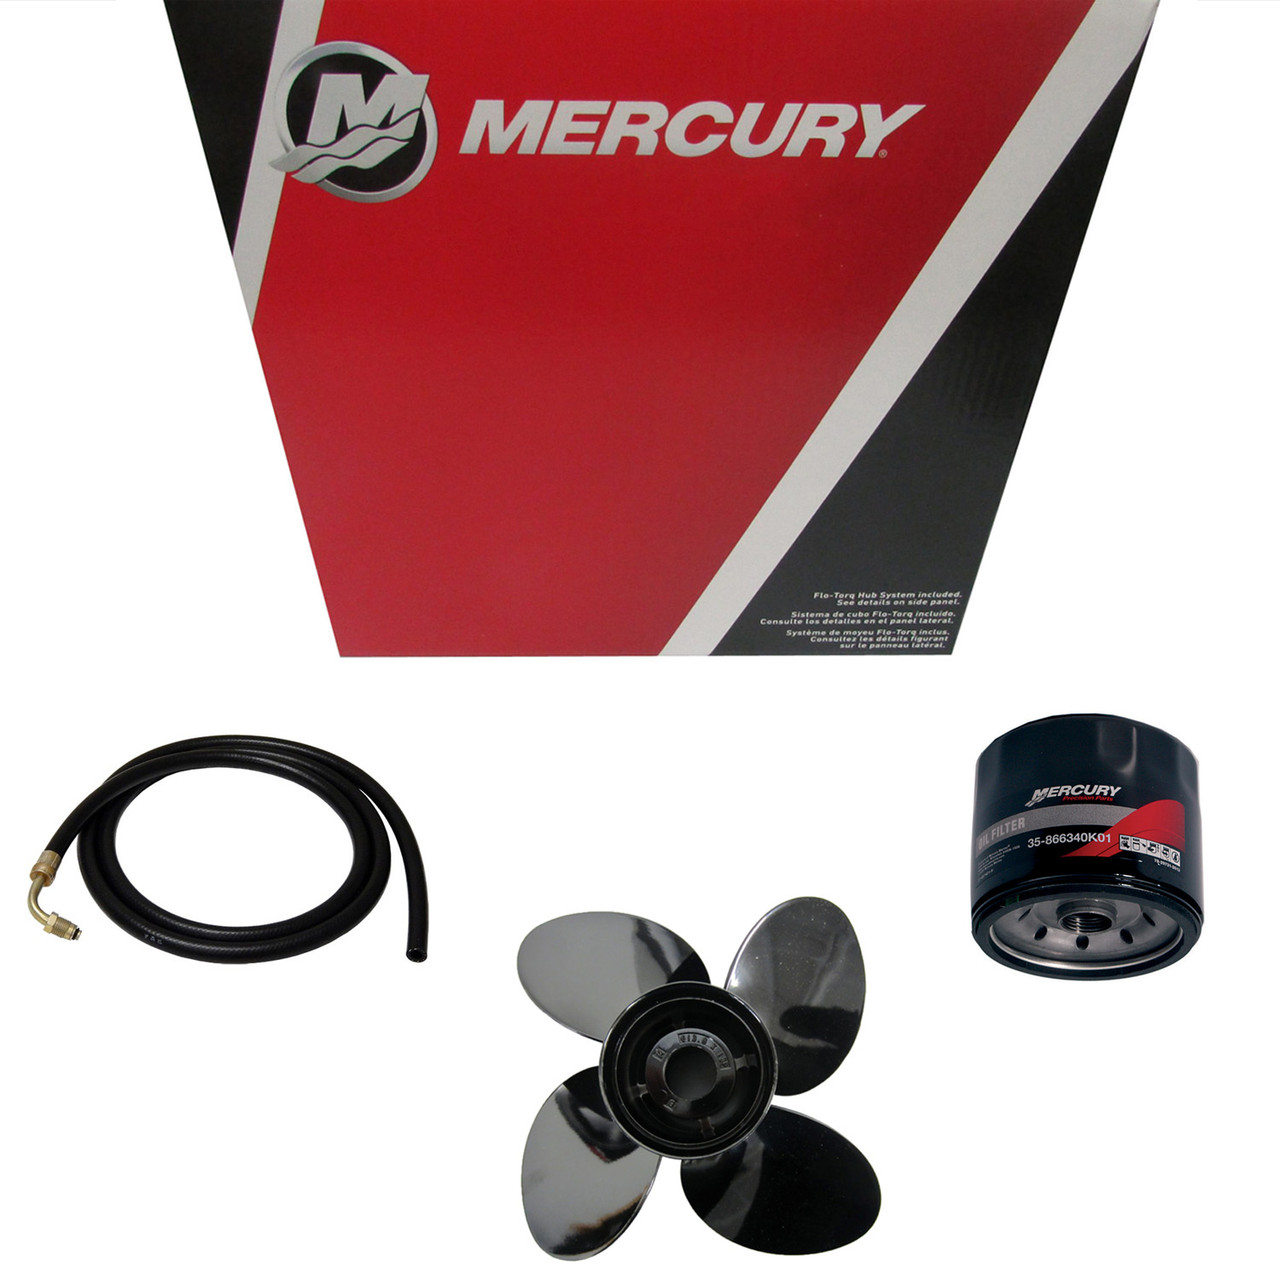 Mercury Marine/MerCruise New OEM Hose, 32-805987